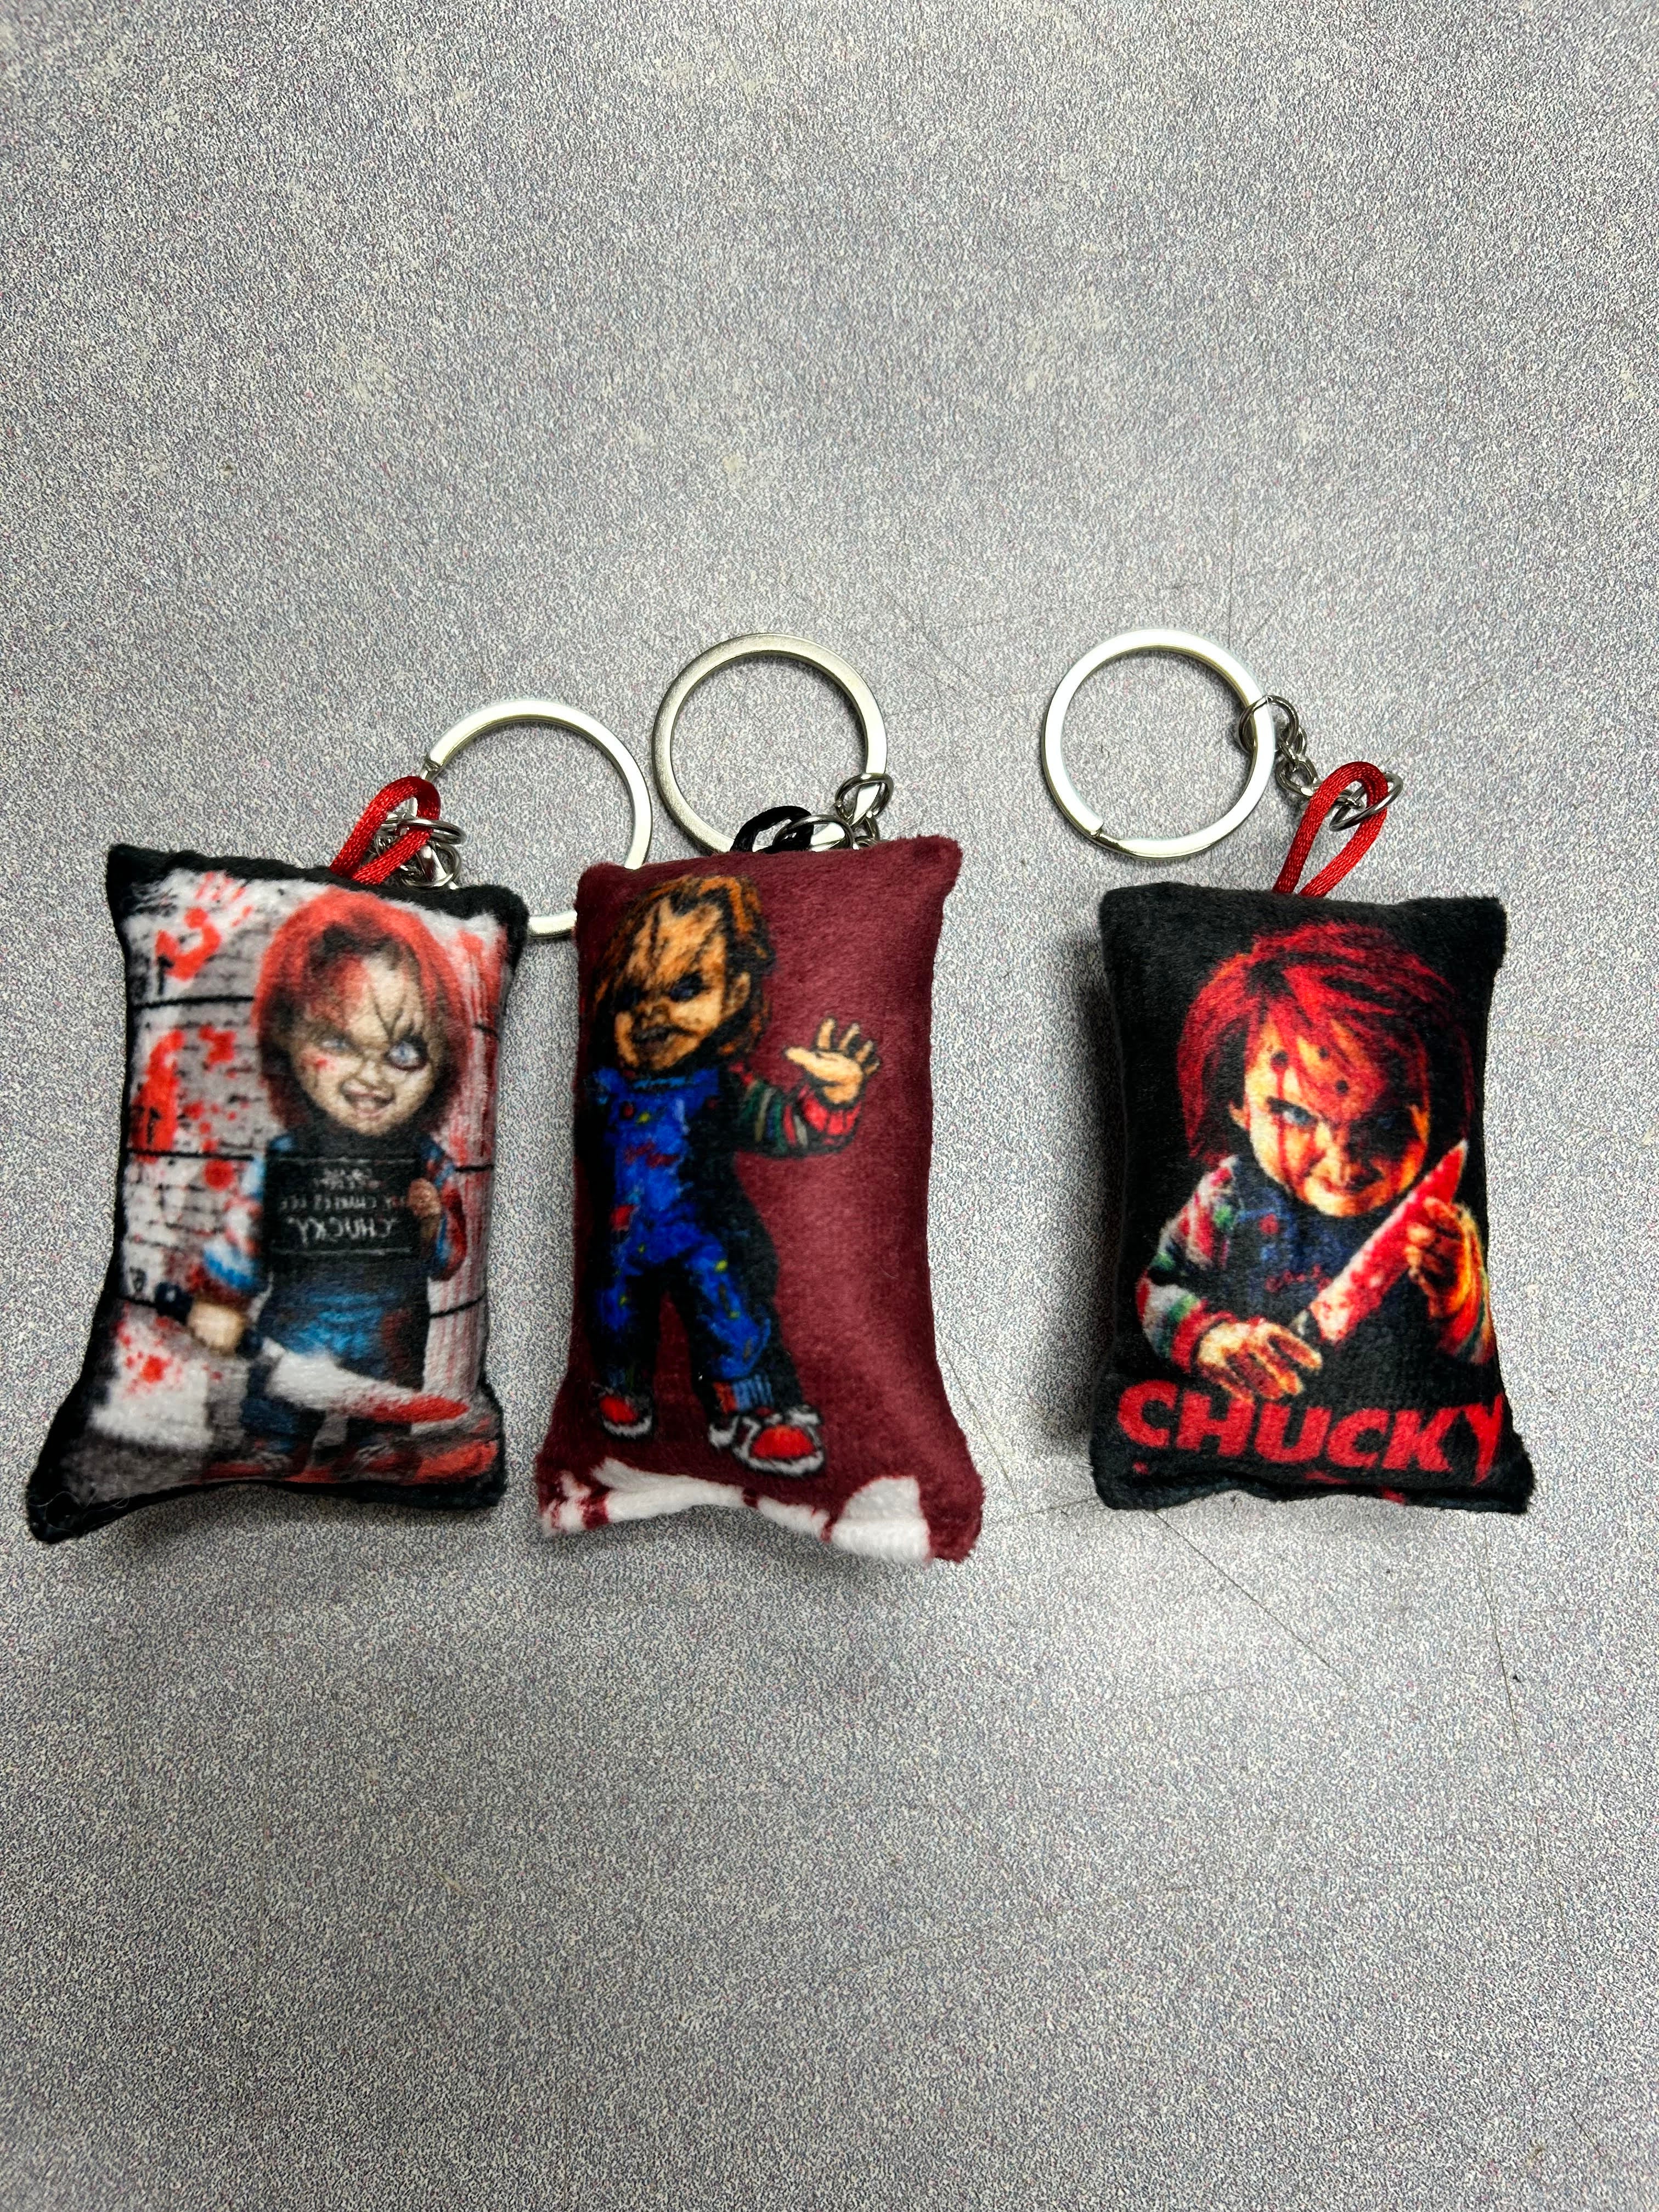 Chucky Pillow Keychain-hotRAGS.com